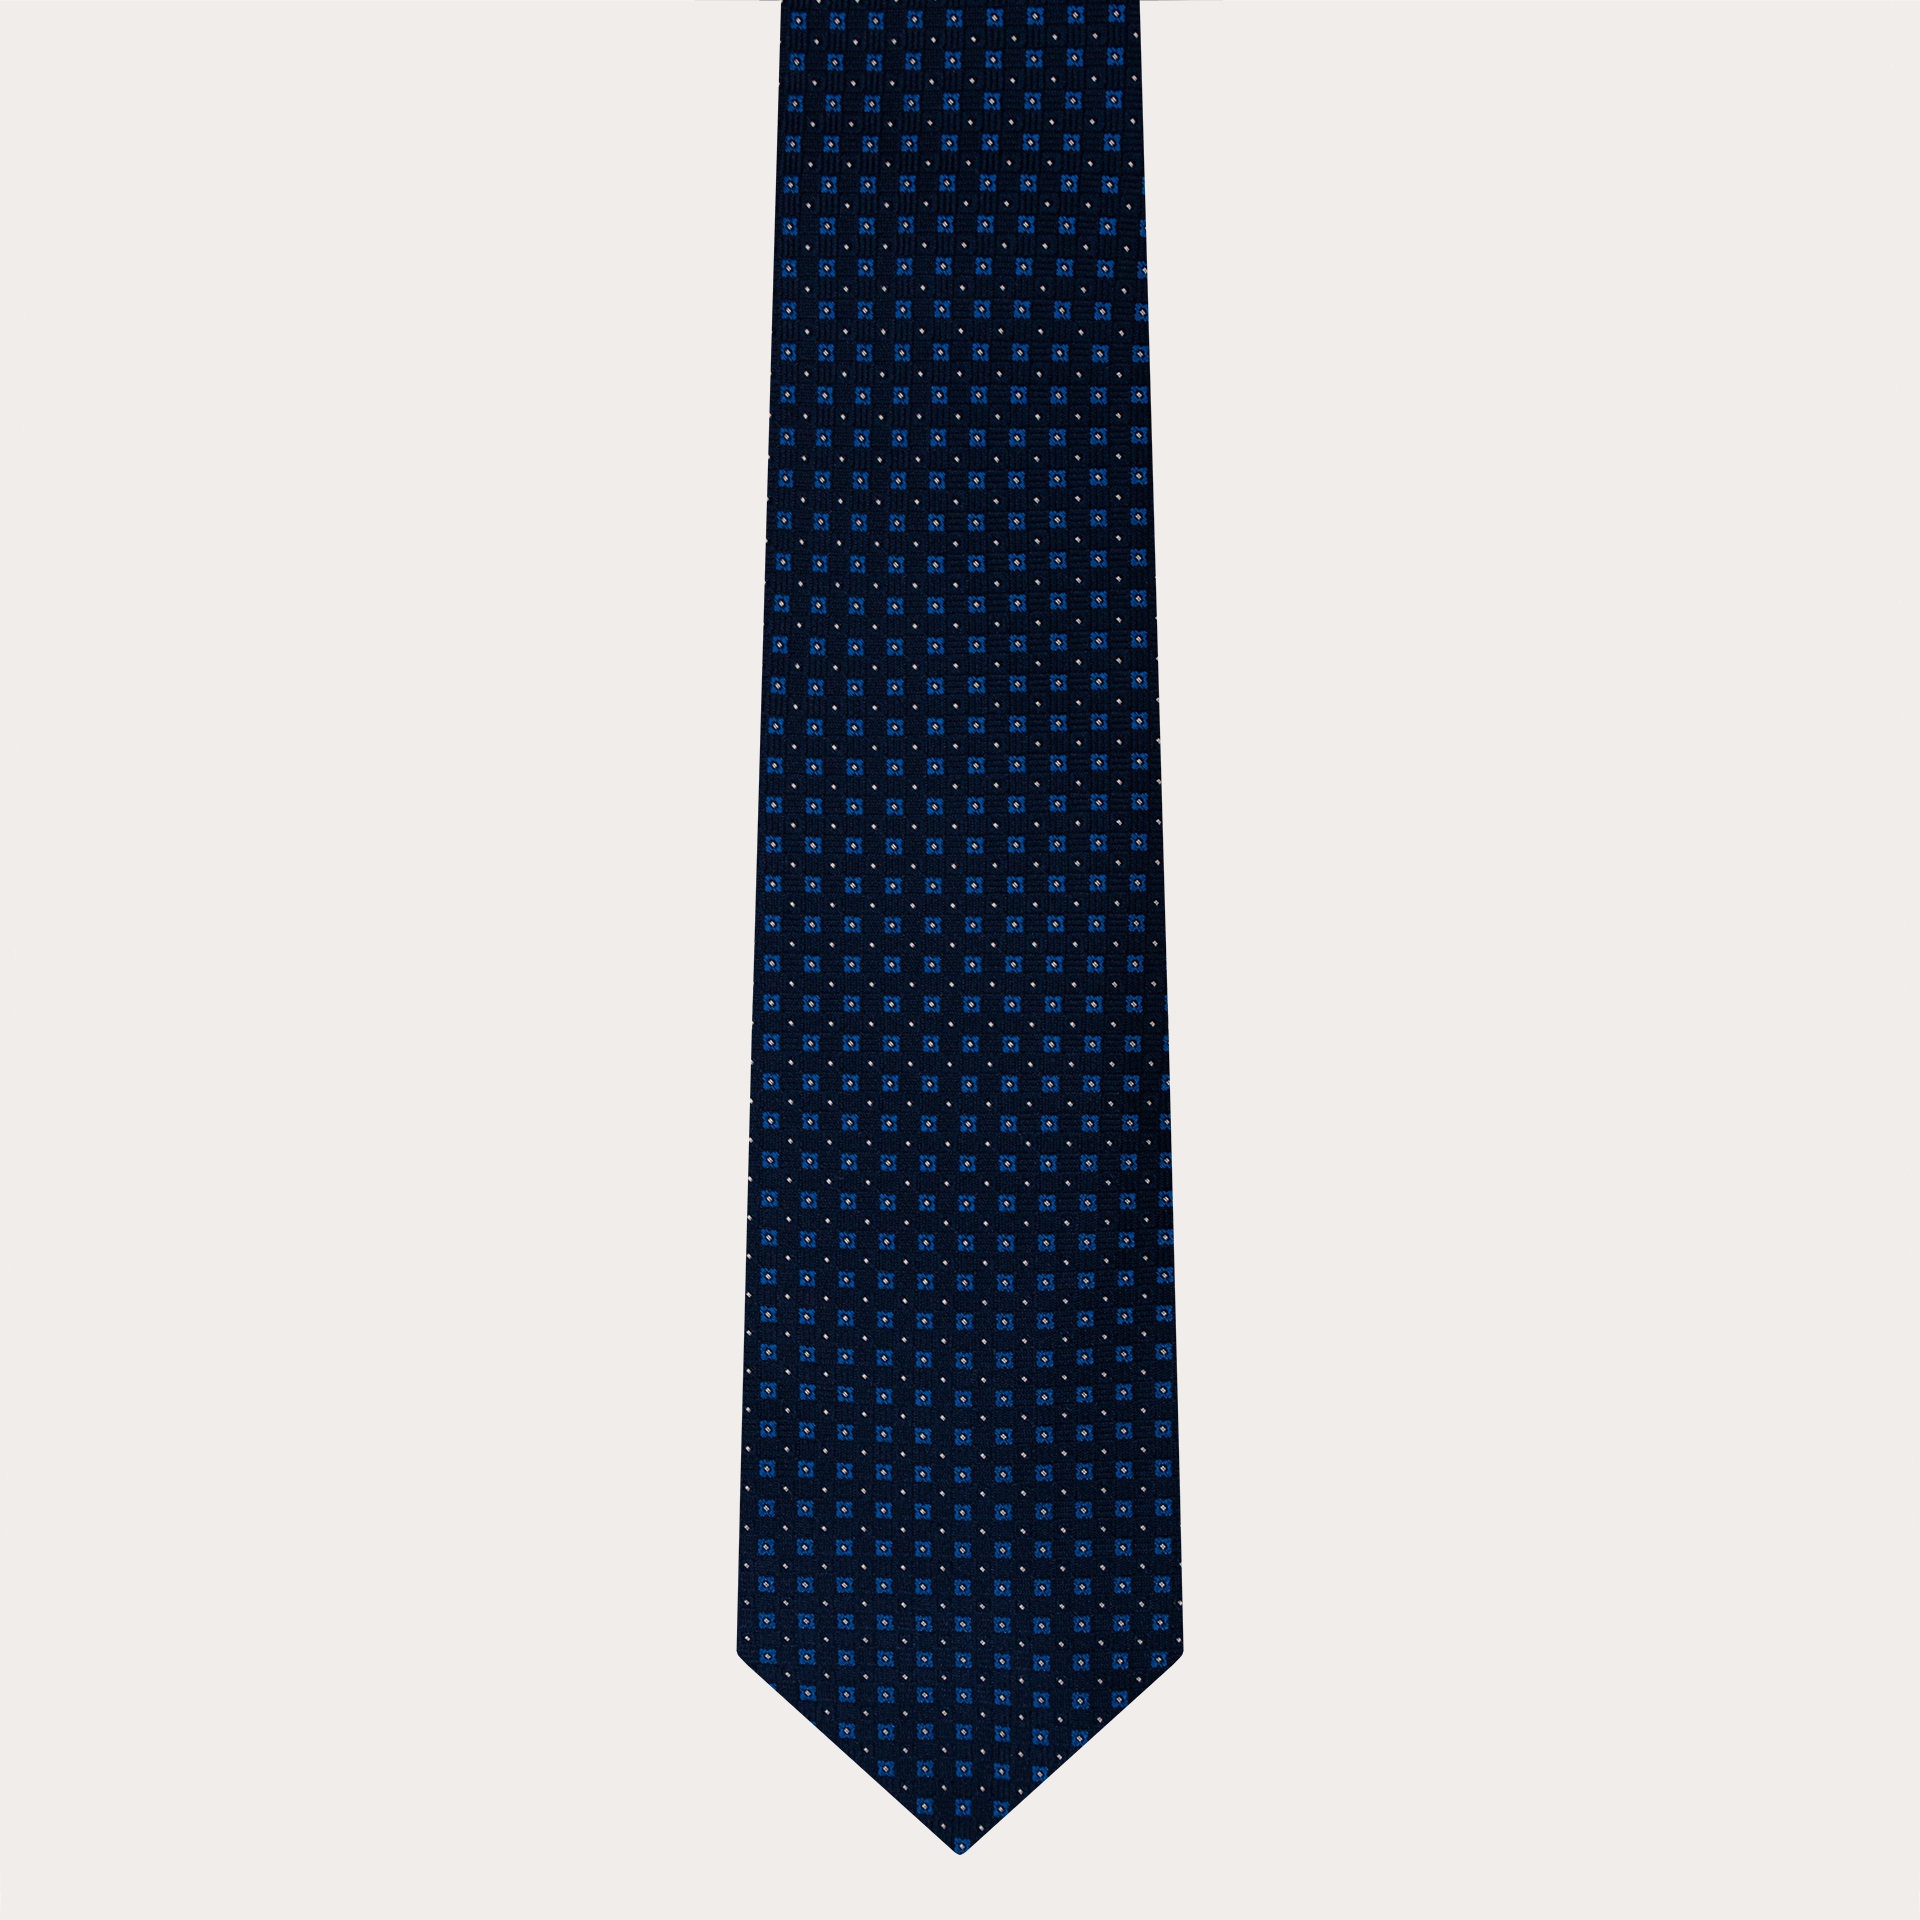 BRUCLE Elegante cravatta in seta jacquard, blu con microdisegno floreale